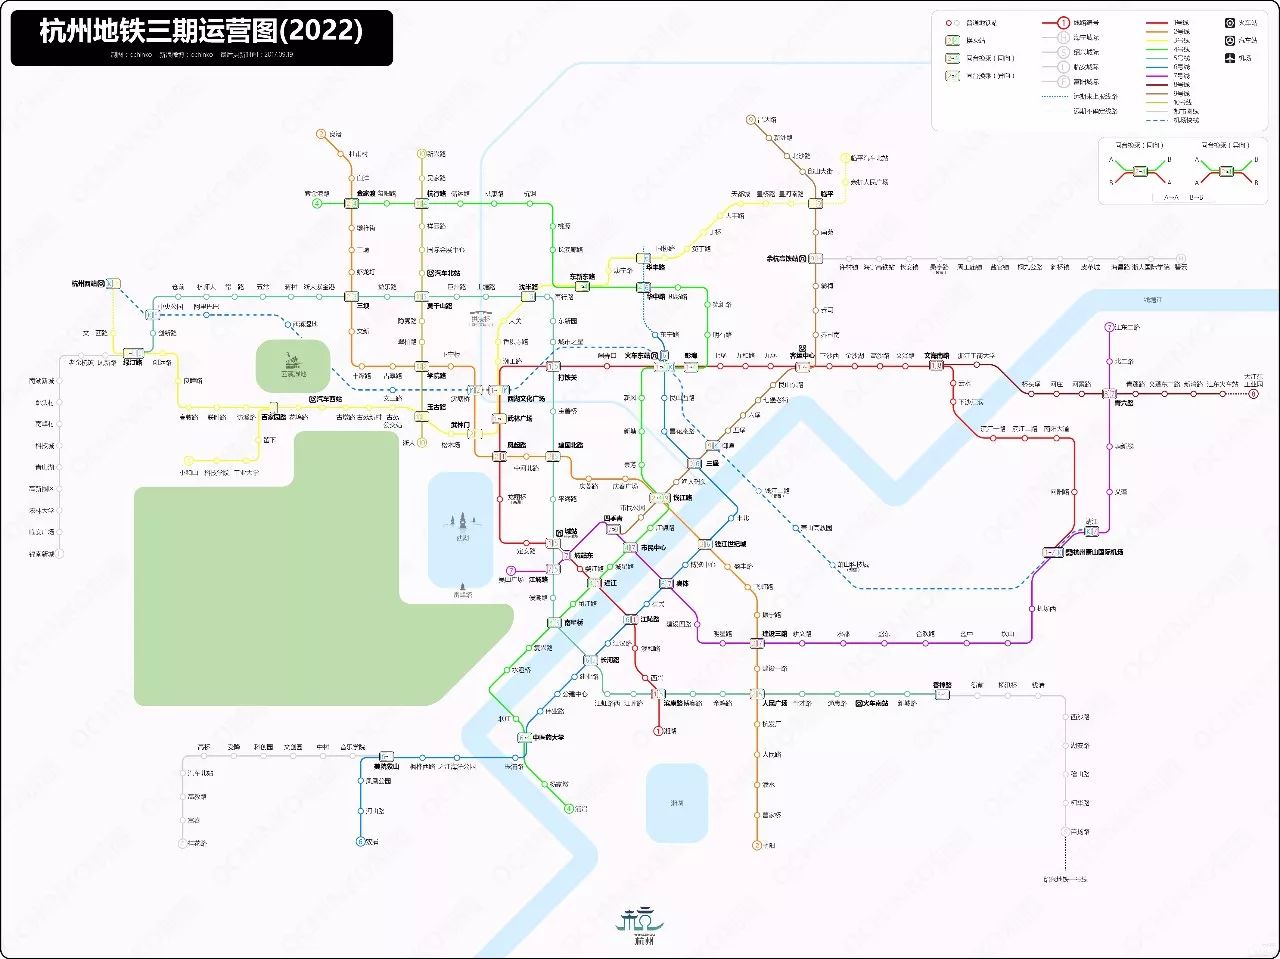 到2022年亚运会召开前,杭州将有10条地铁线路开通运营,覆盖9个城区